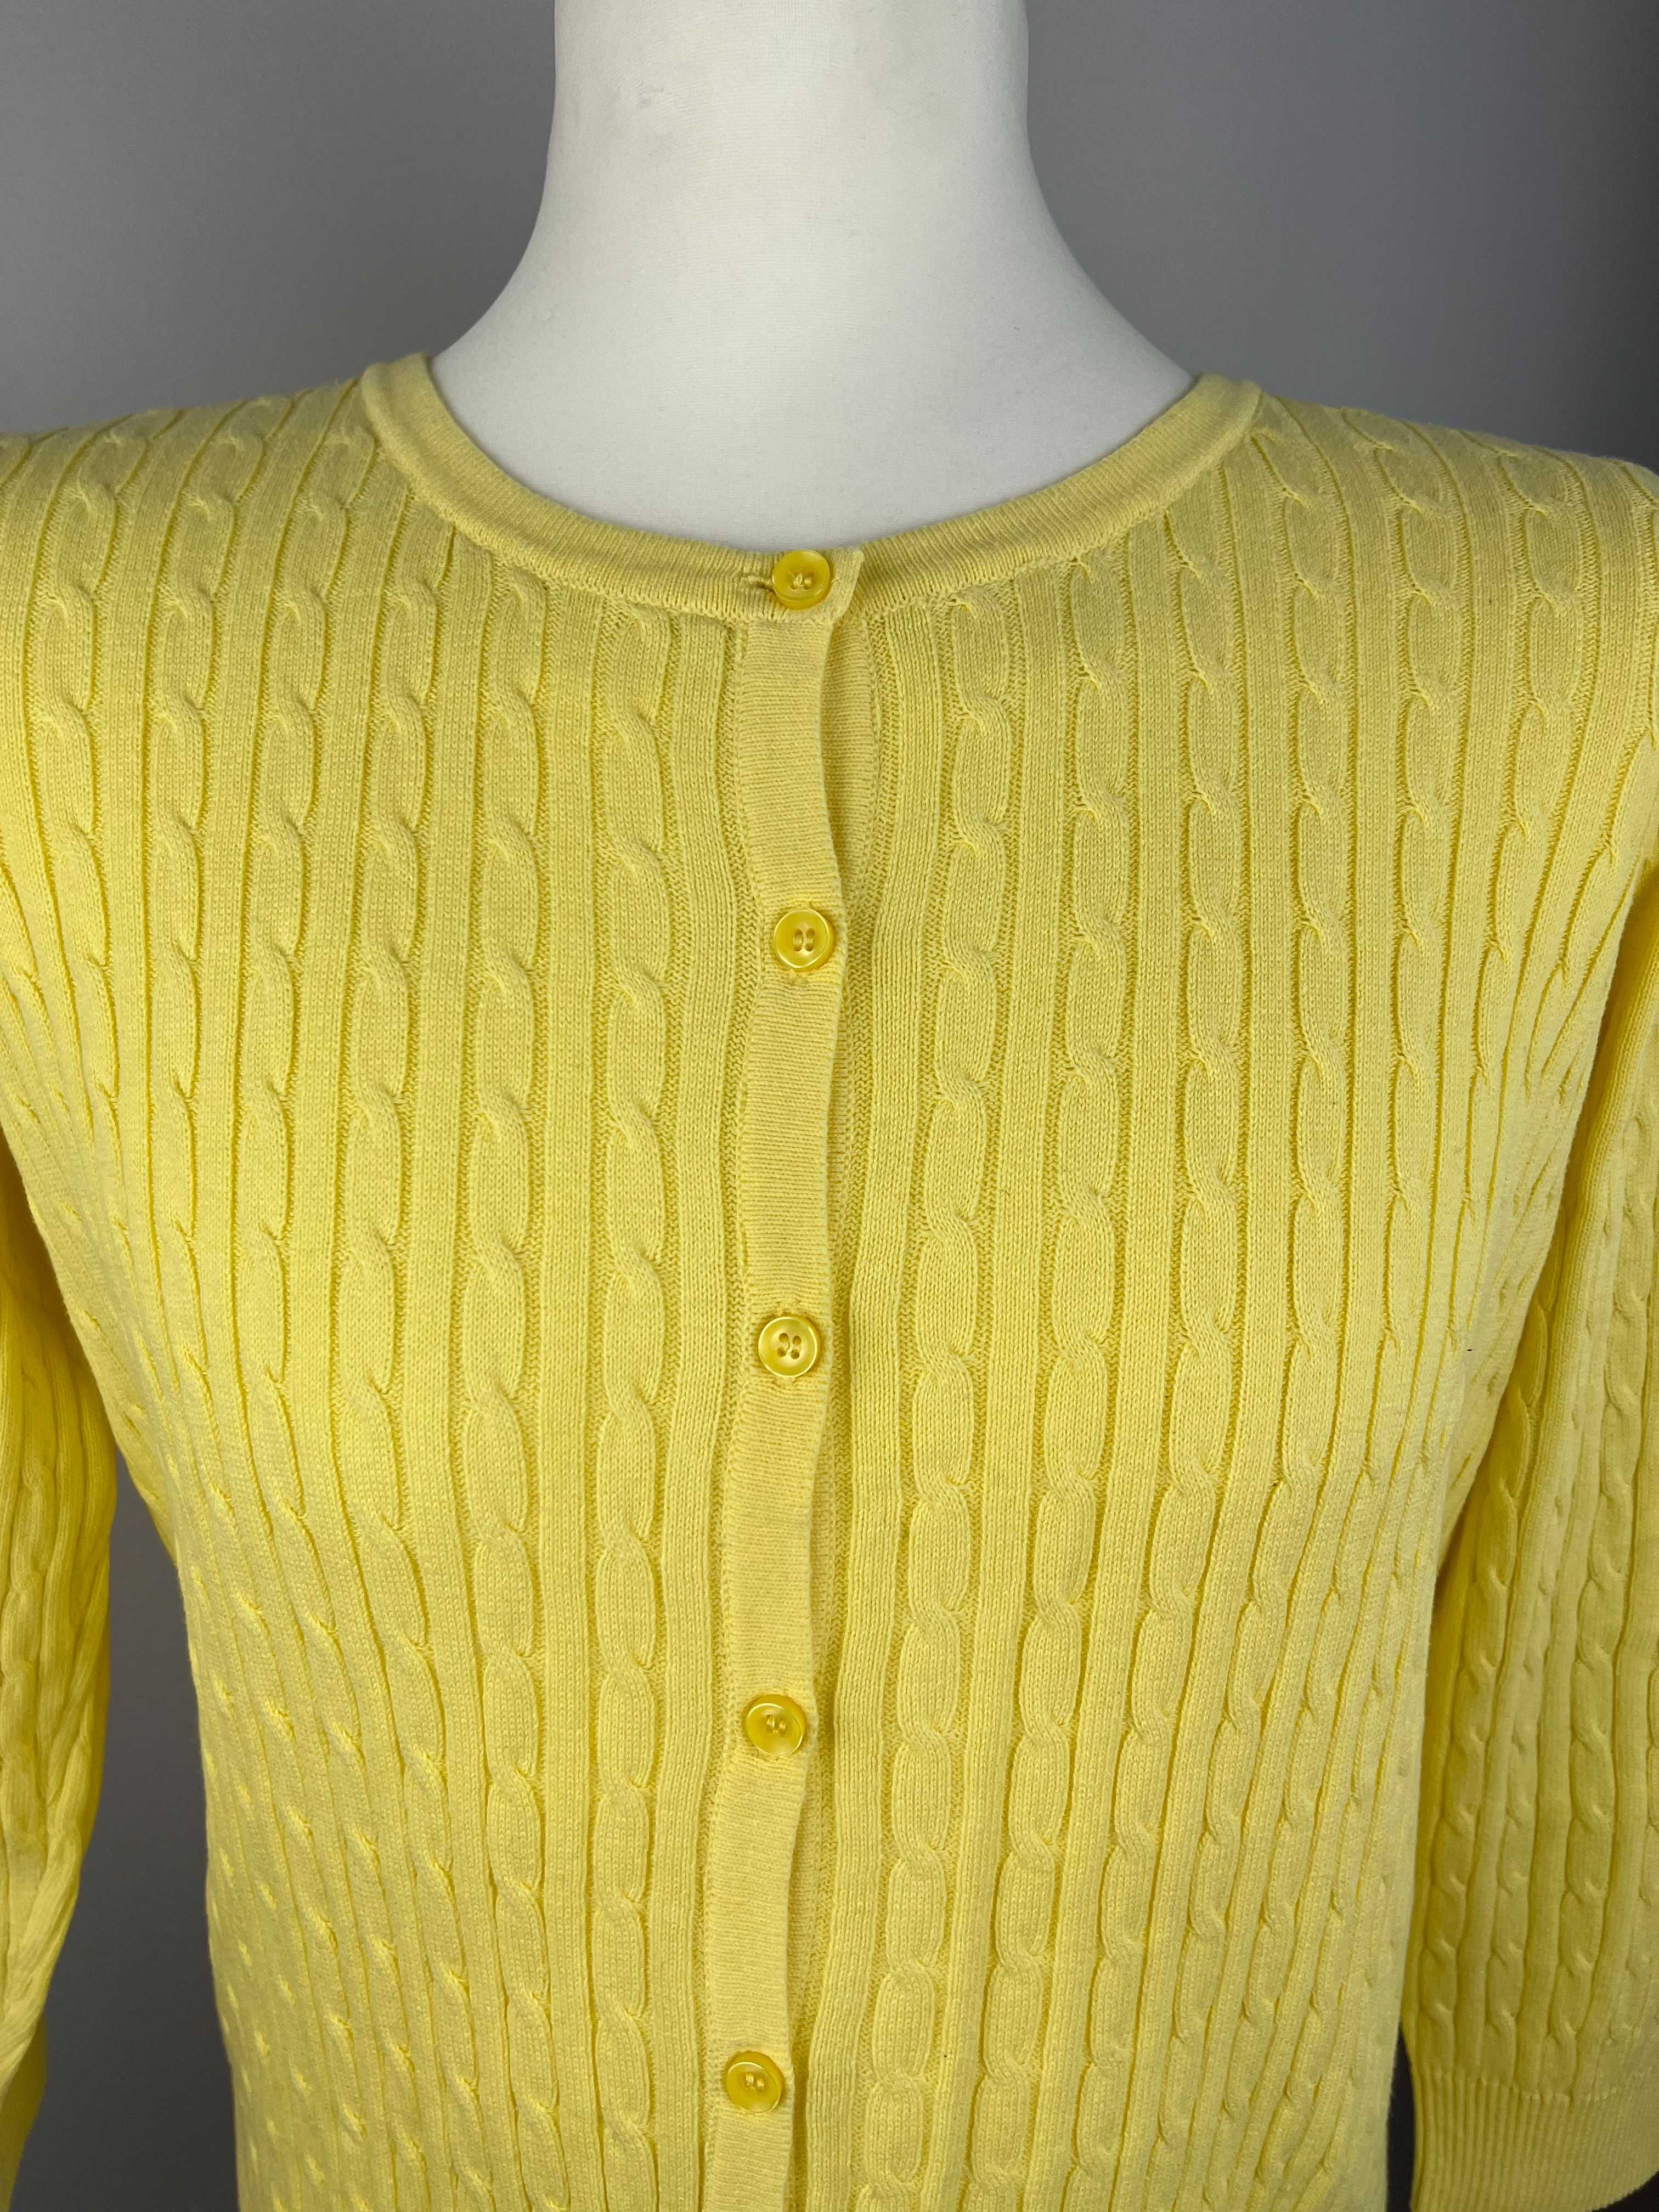 NOWY żółty rozpinany krótki sweterek JNY w warkocze XL